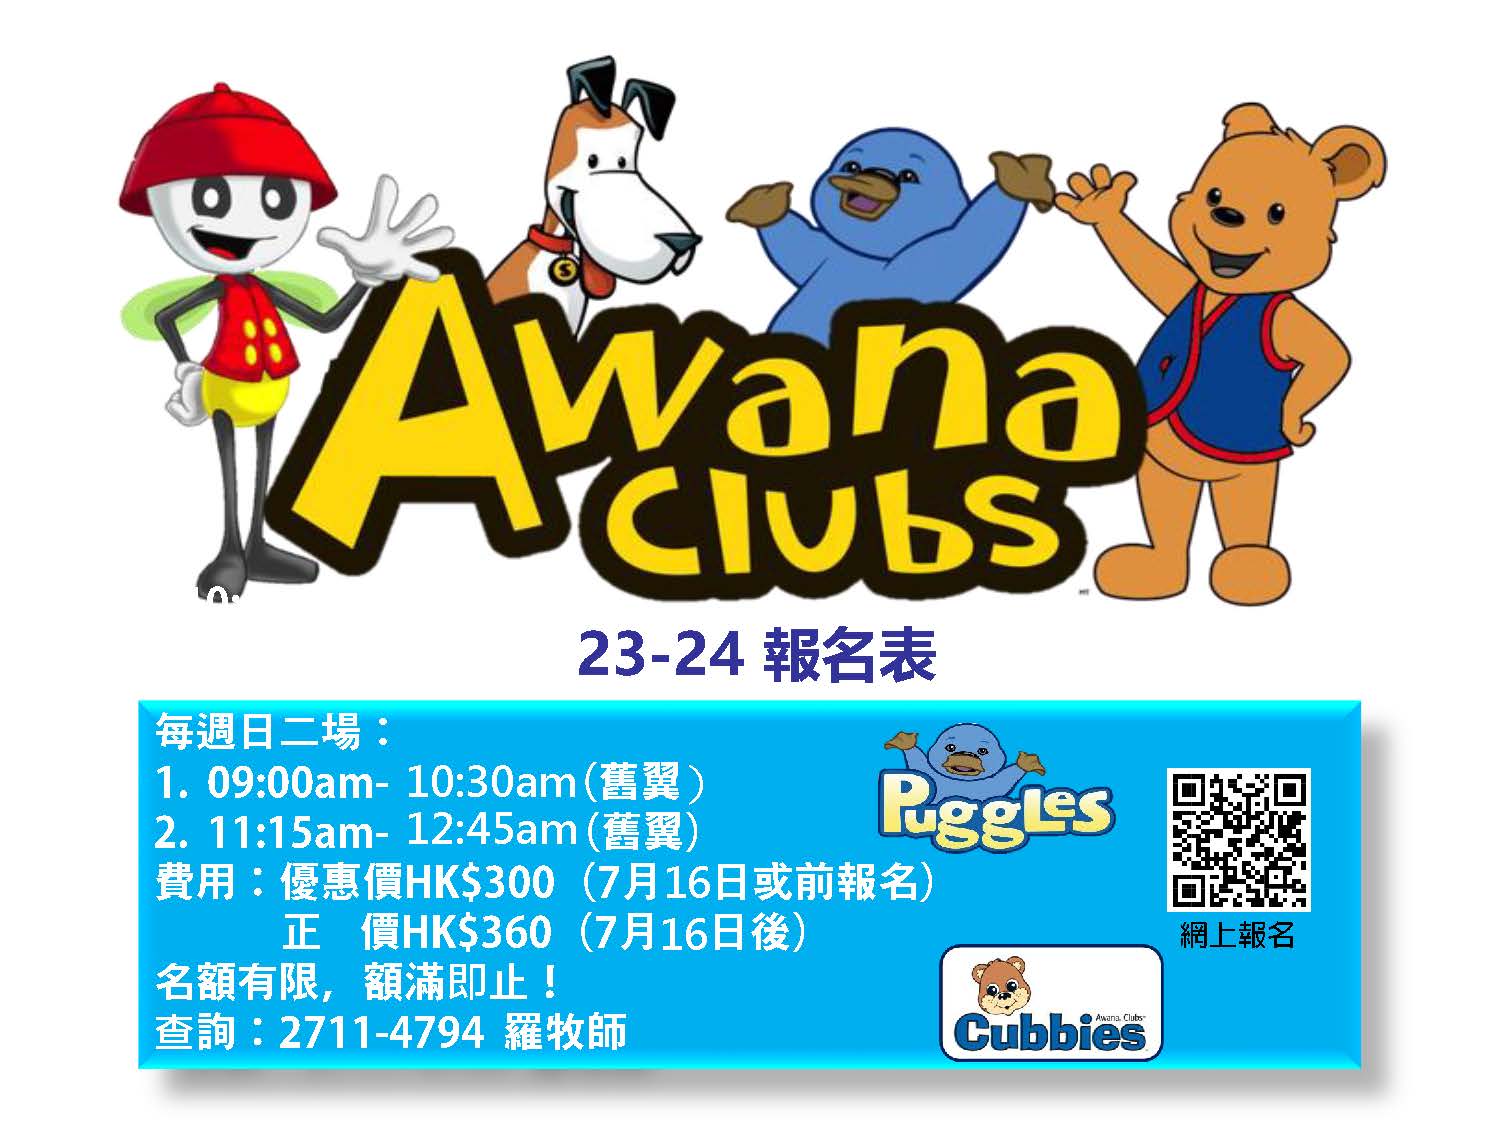 23-24 puggles & cubbies 報名表_頁面_1